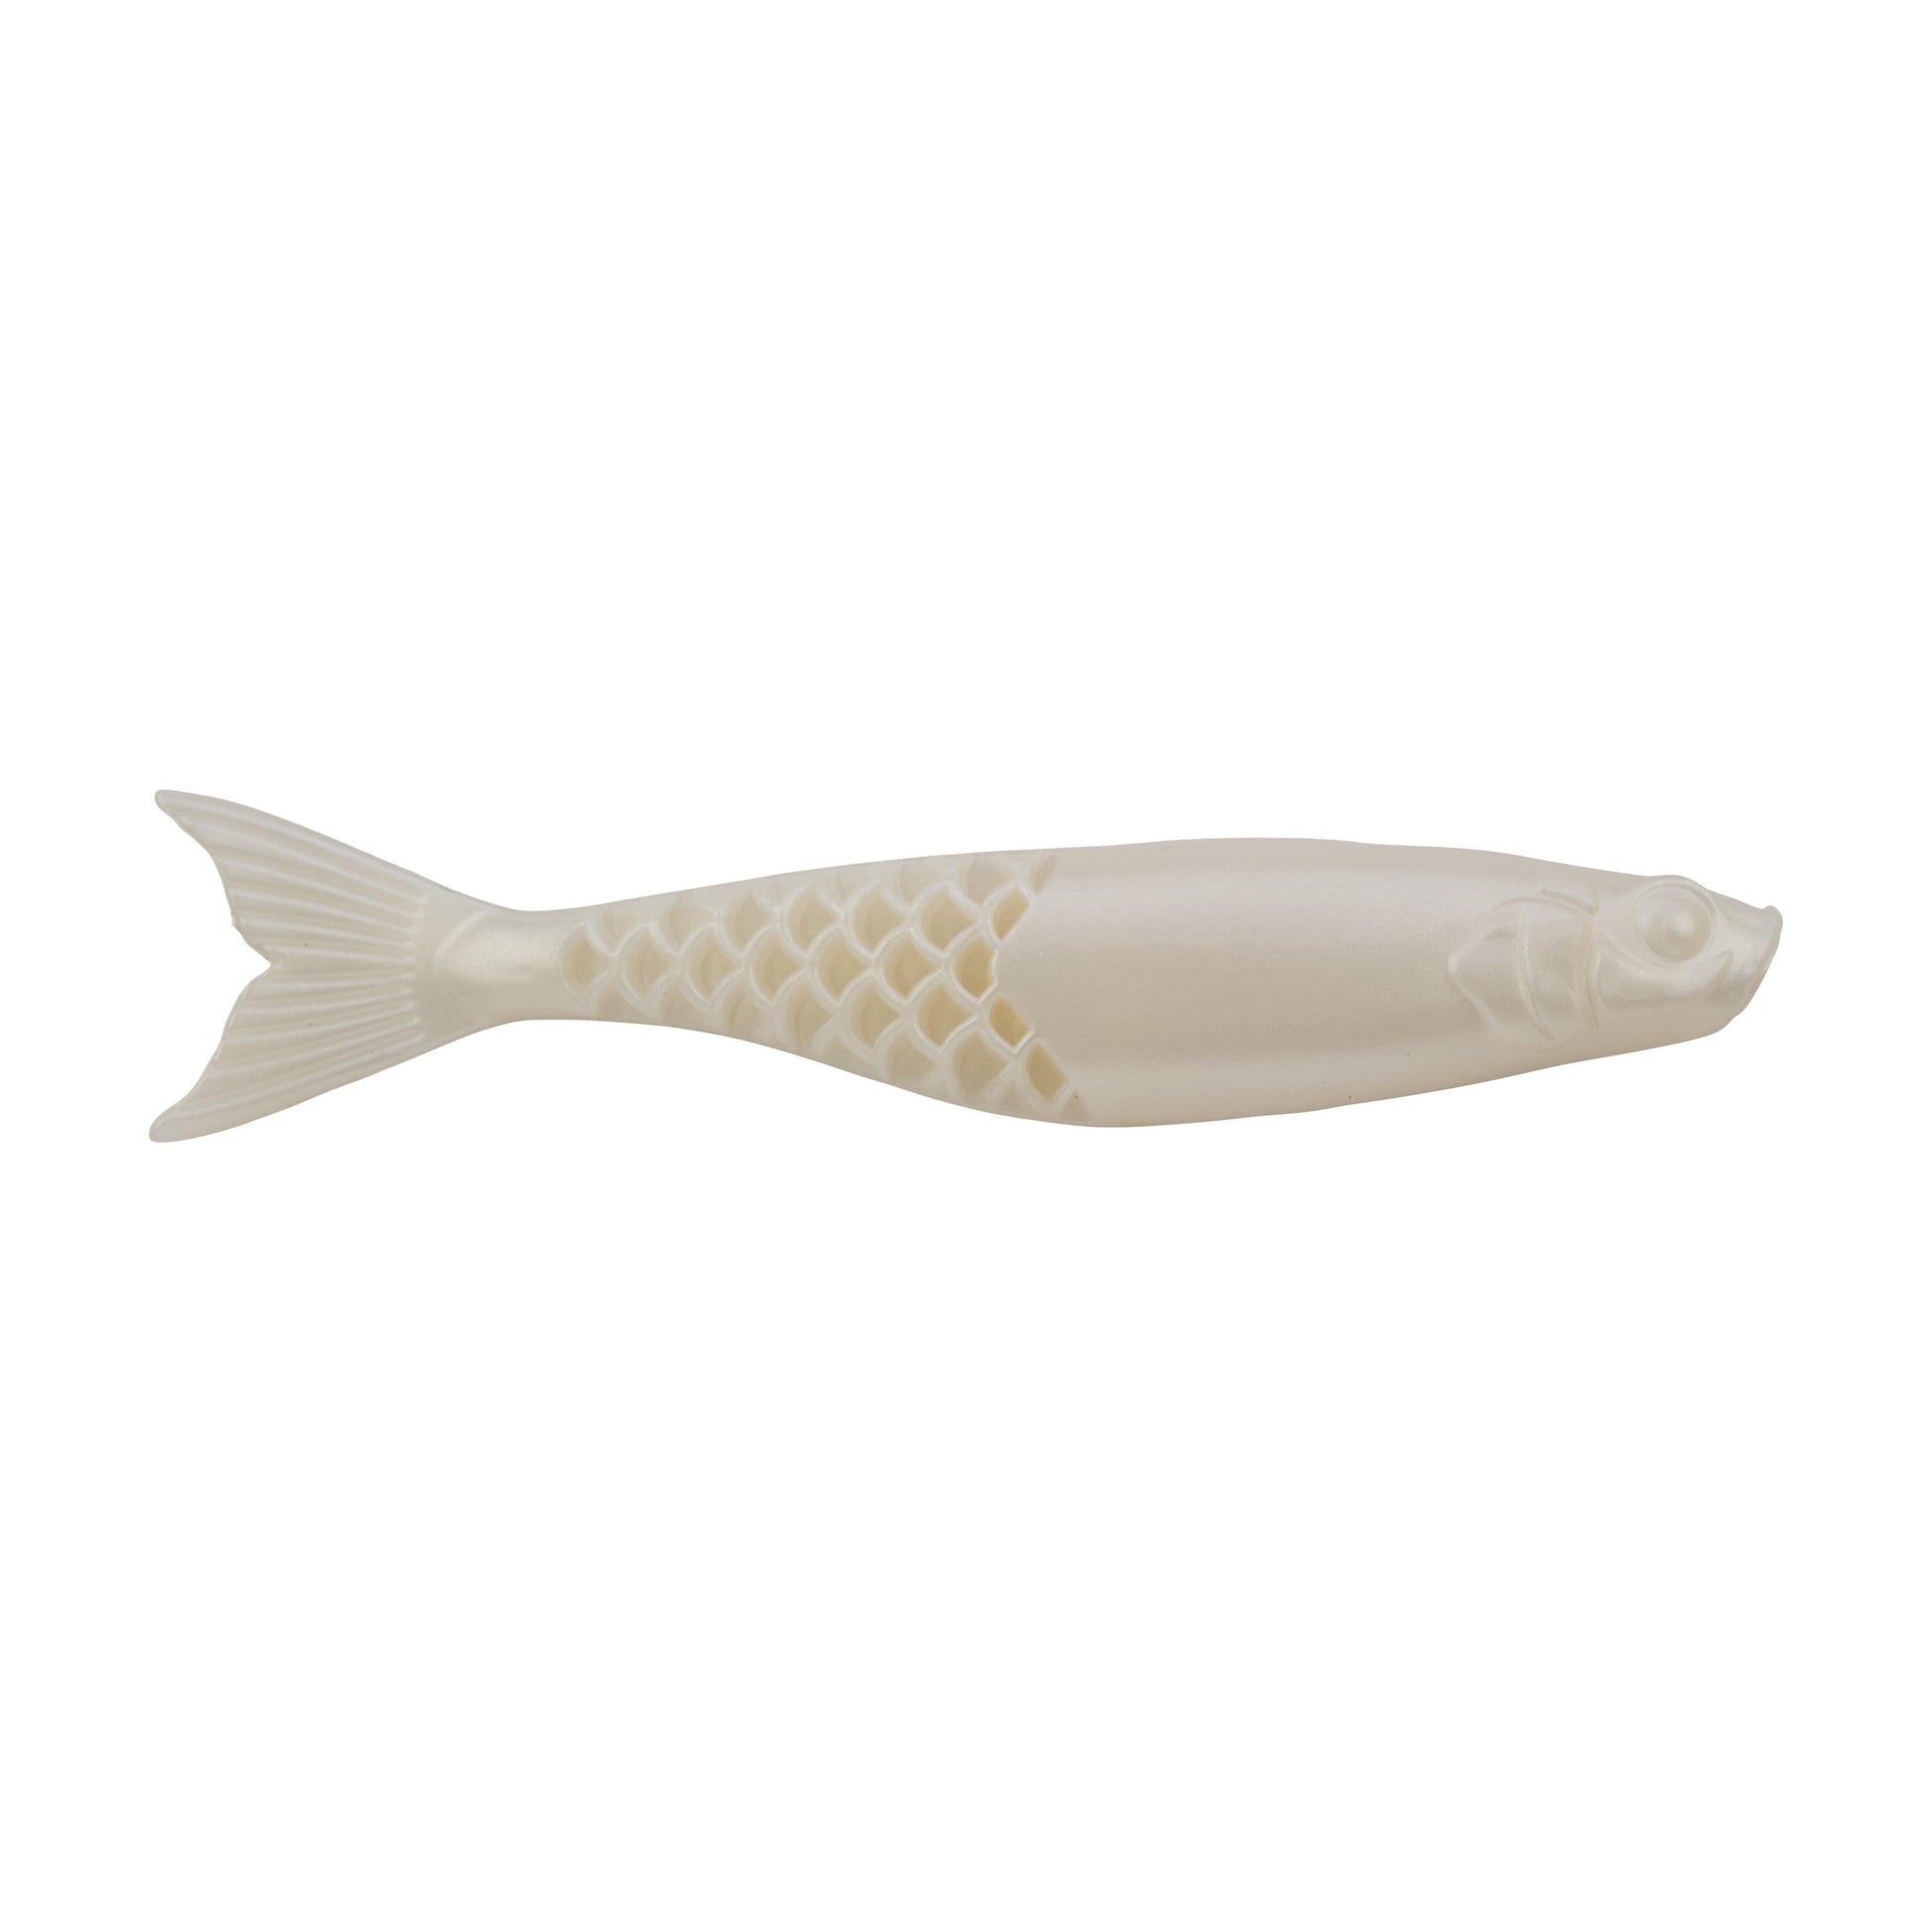 https://www.hammondsfishing.com/cdn/shop/files/Berkley-Powerbait-Power-Stinger-Pearl-White.jpg?v=1705385048&width=1946